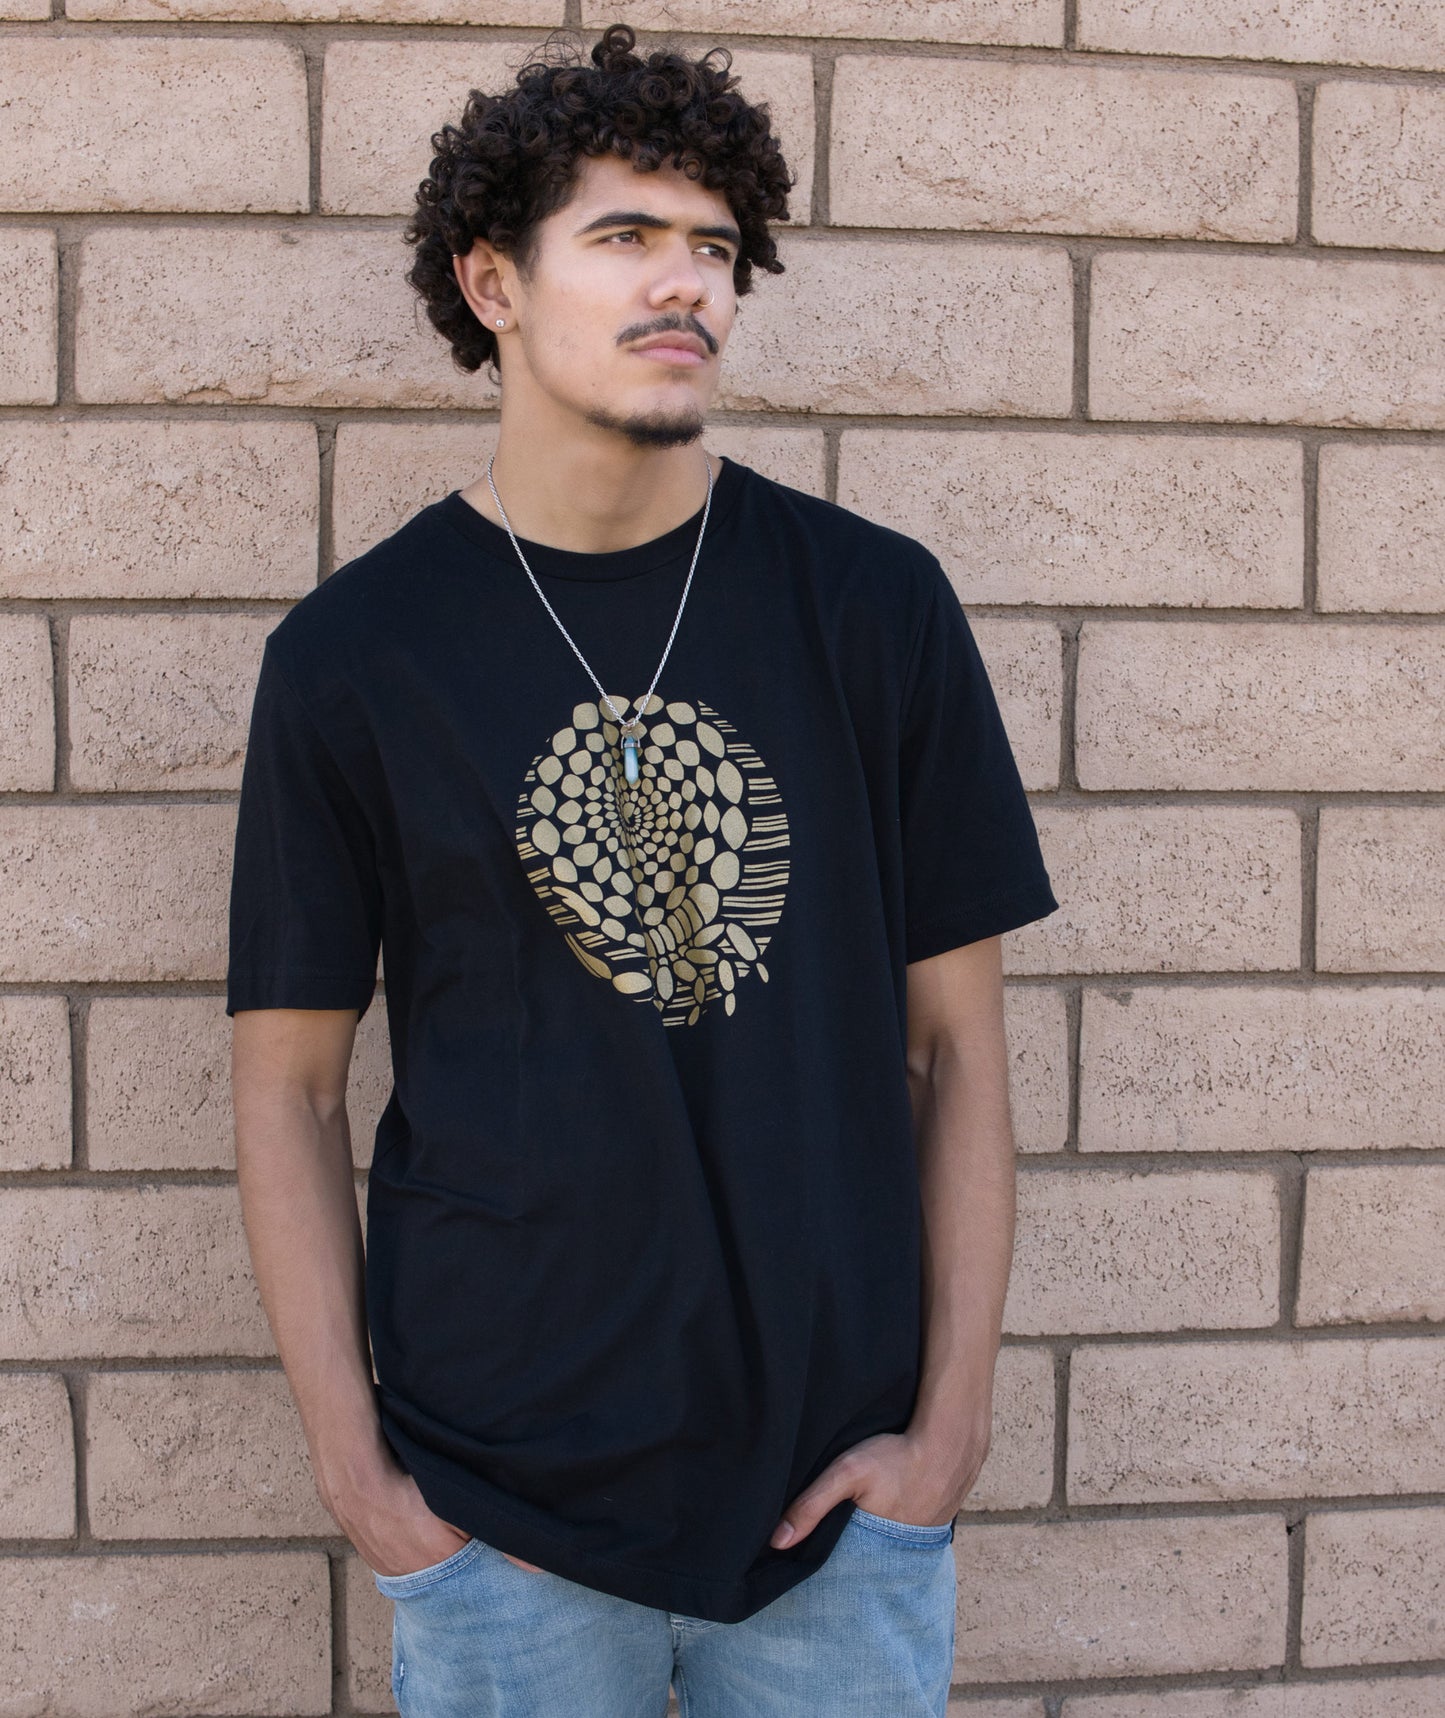 Desert Gold Scorpion T-shirt in Black Modeled by Andrew Clark